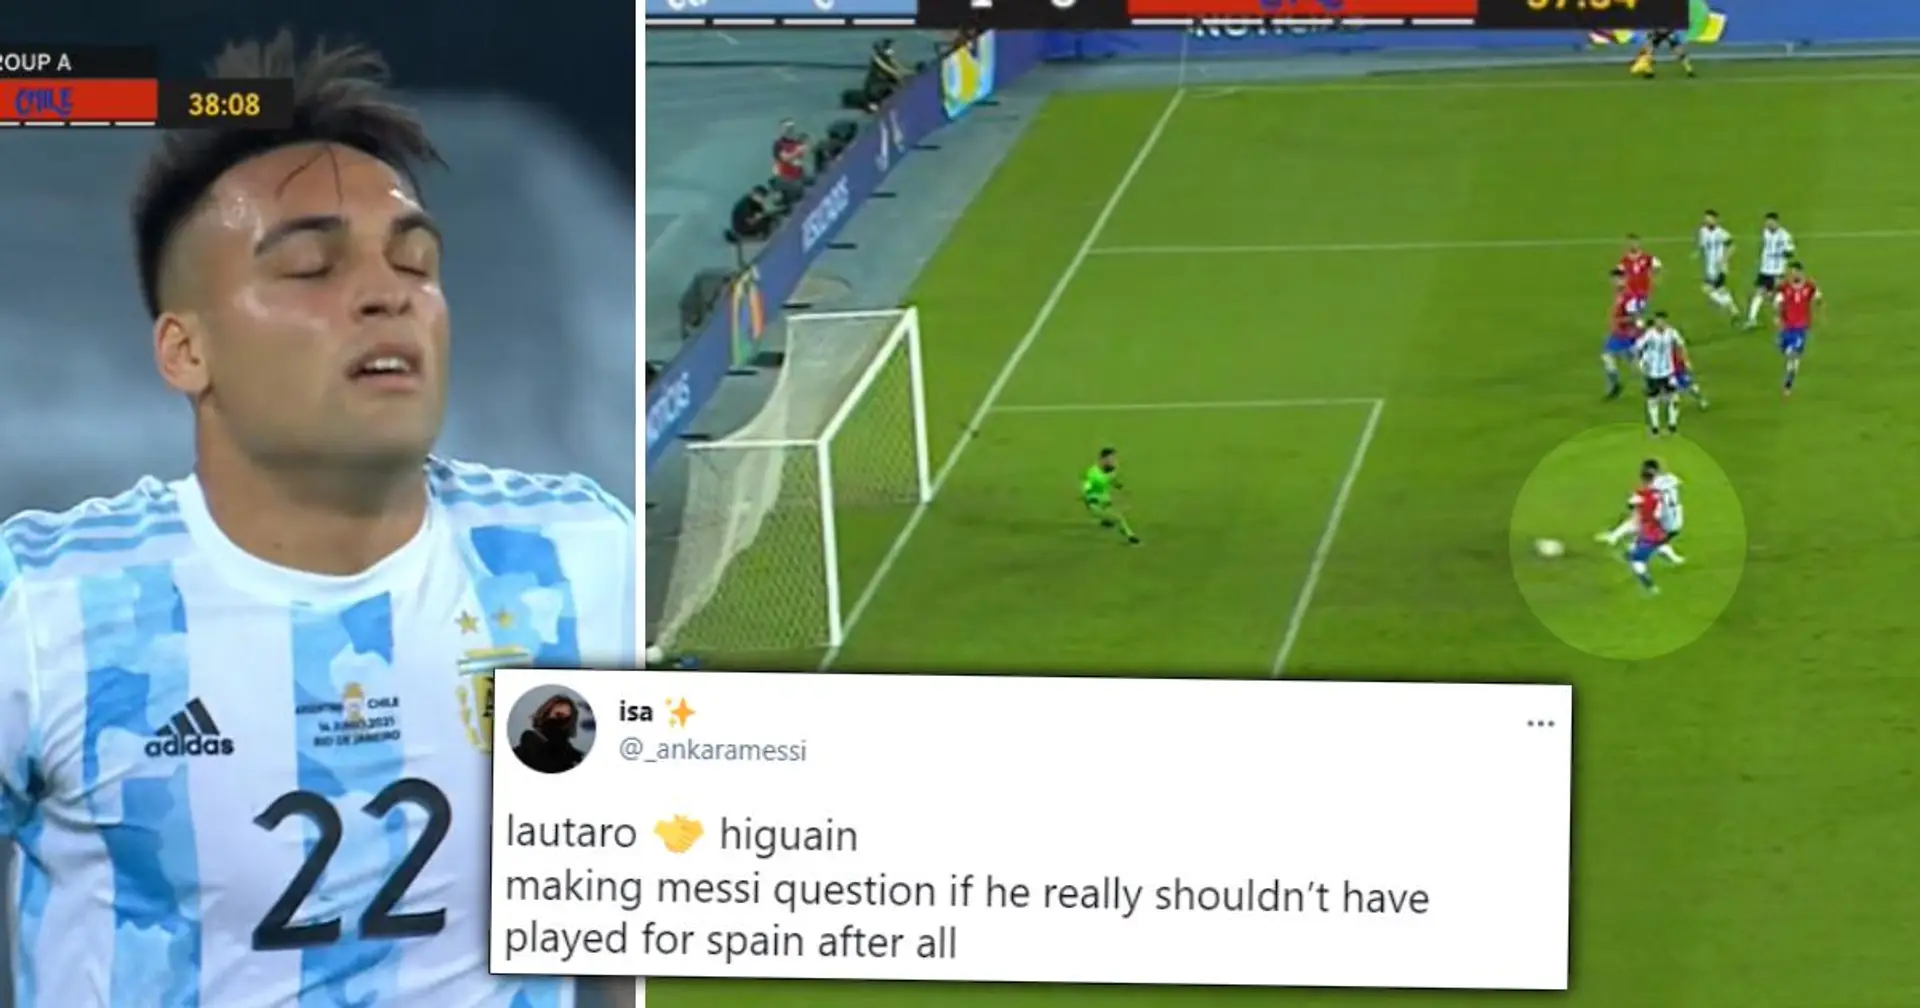 "Lautaro est Higuain 2.0": Les fans réagissent alors que Martinez, une cible potentielle du Barça, manque quelques occasions contre le Chili